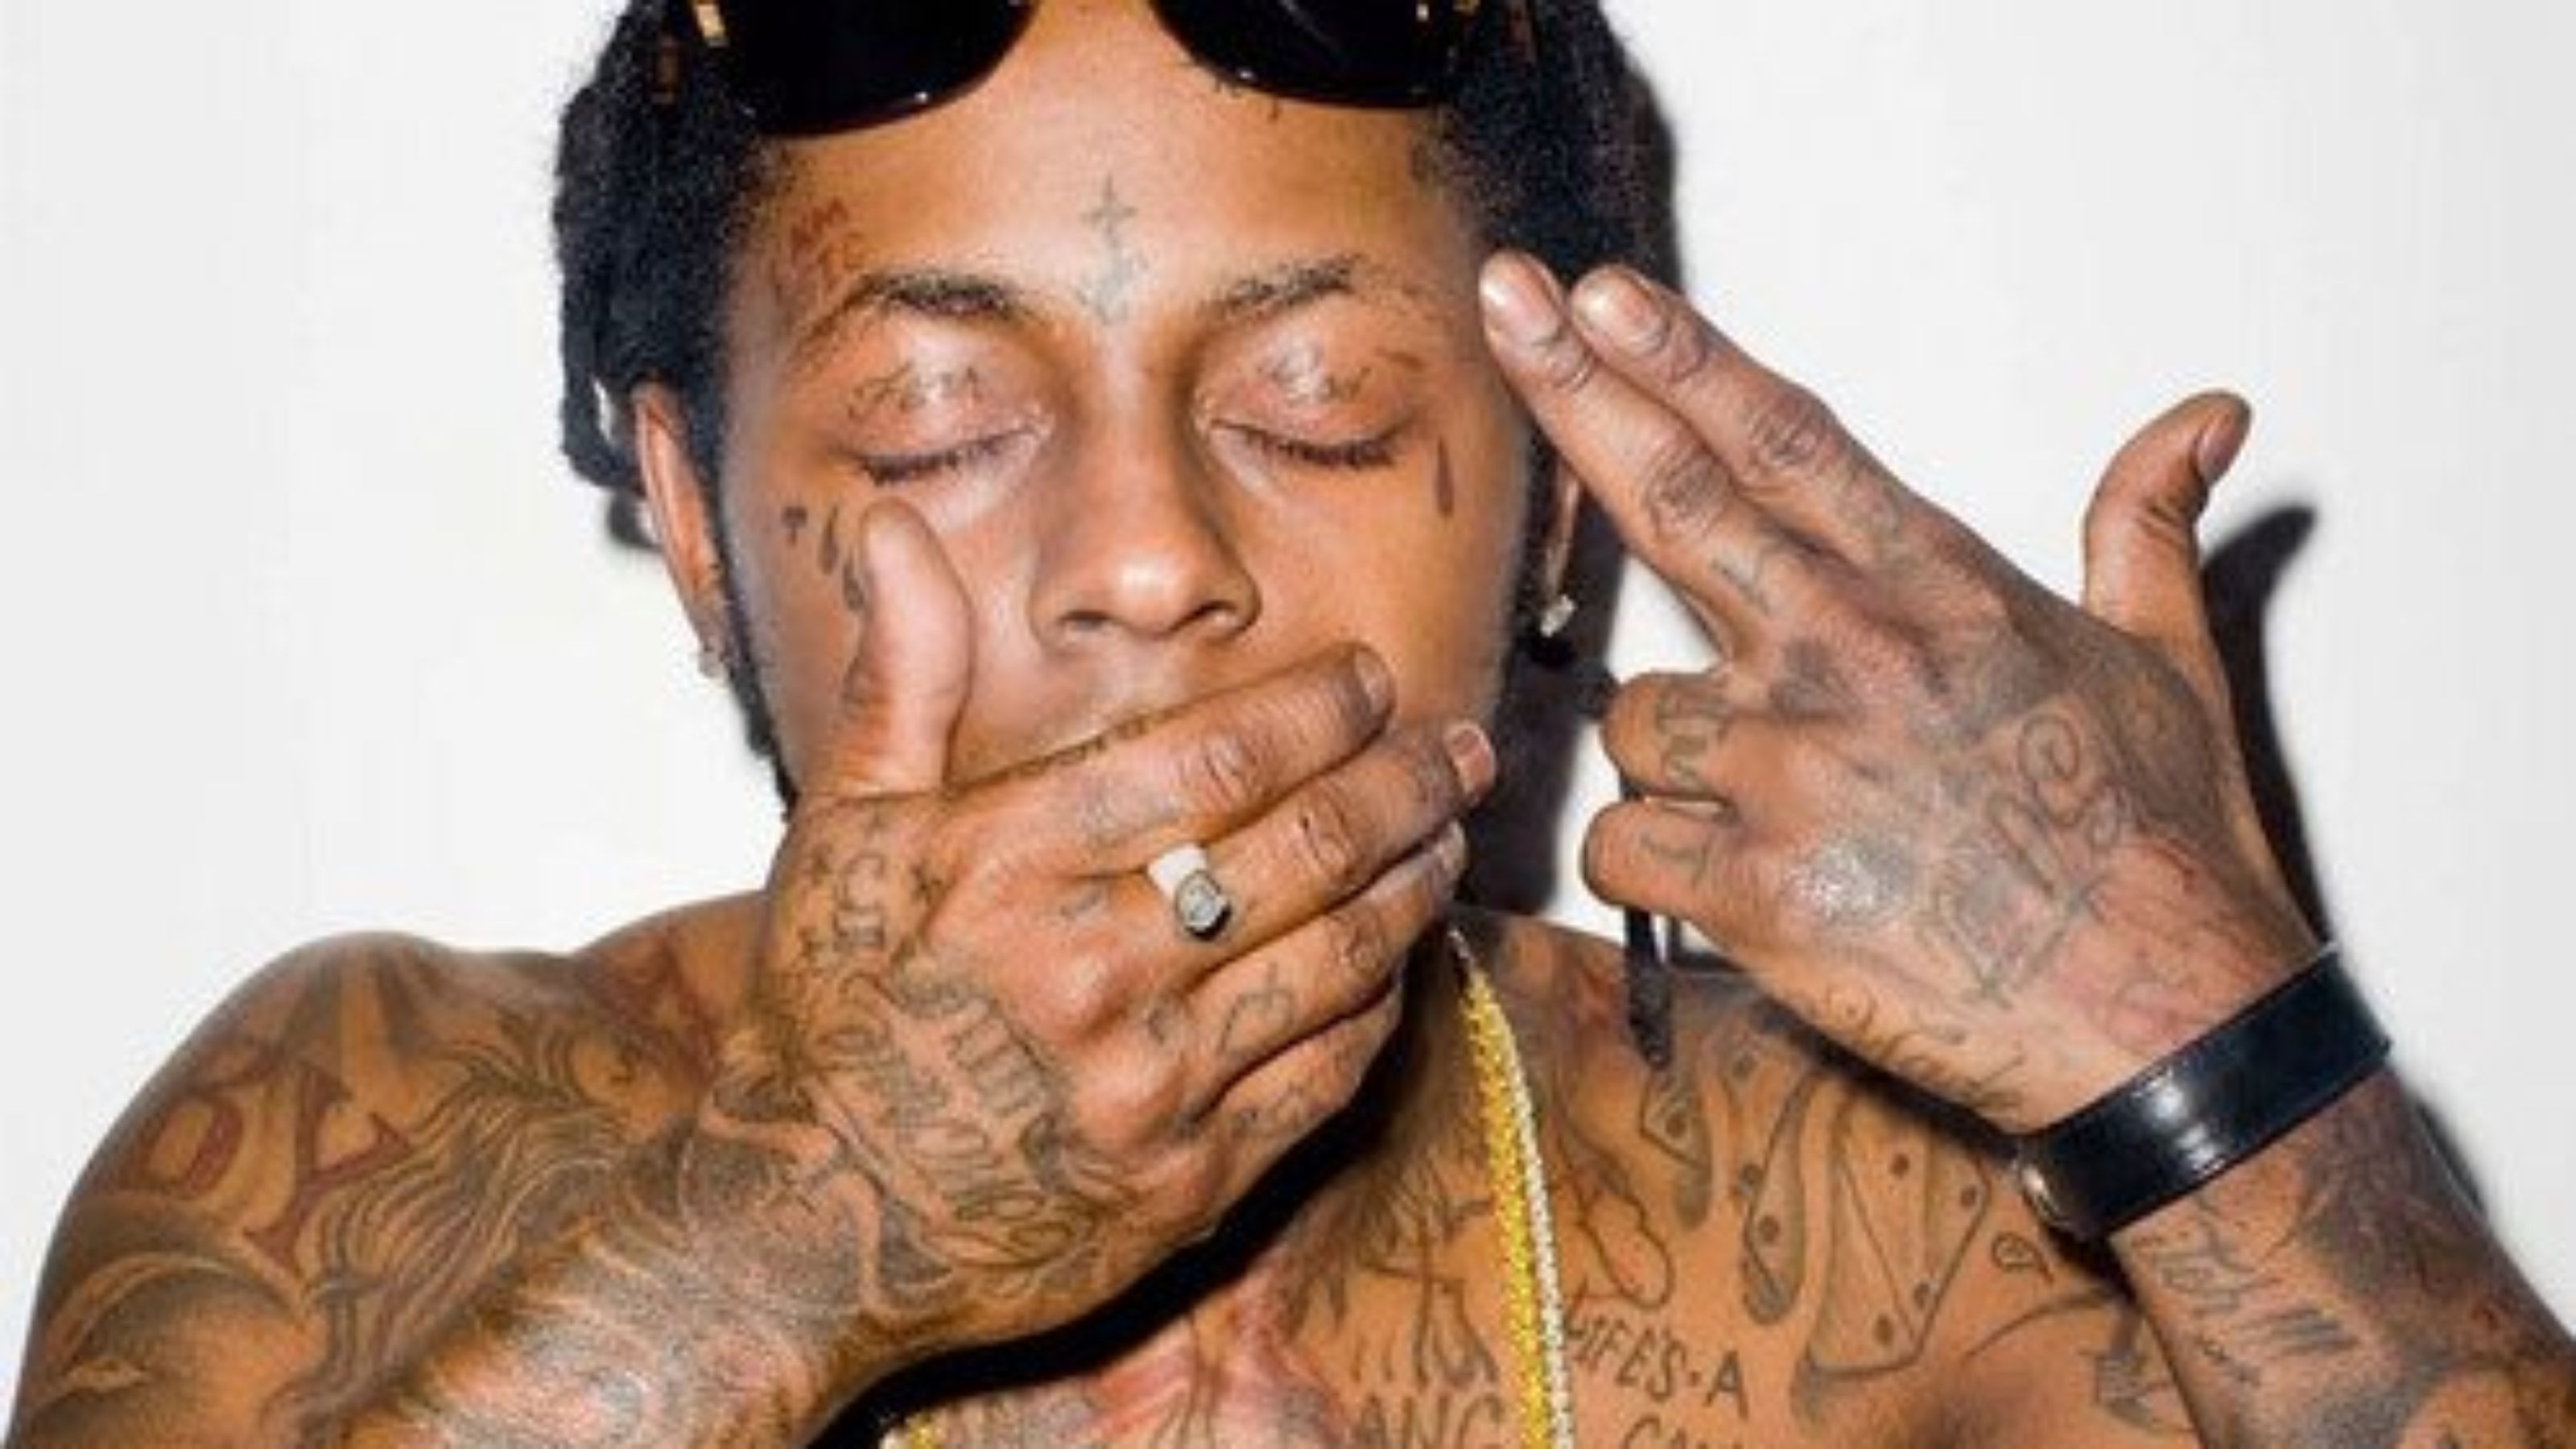 Lil Wayne Tattoos - HD Wallpaper 